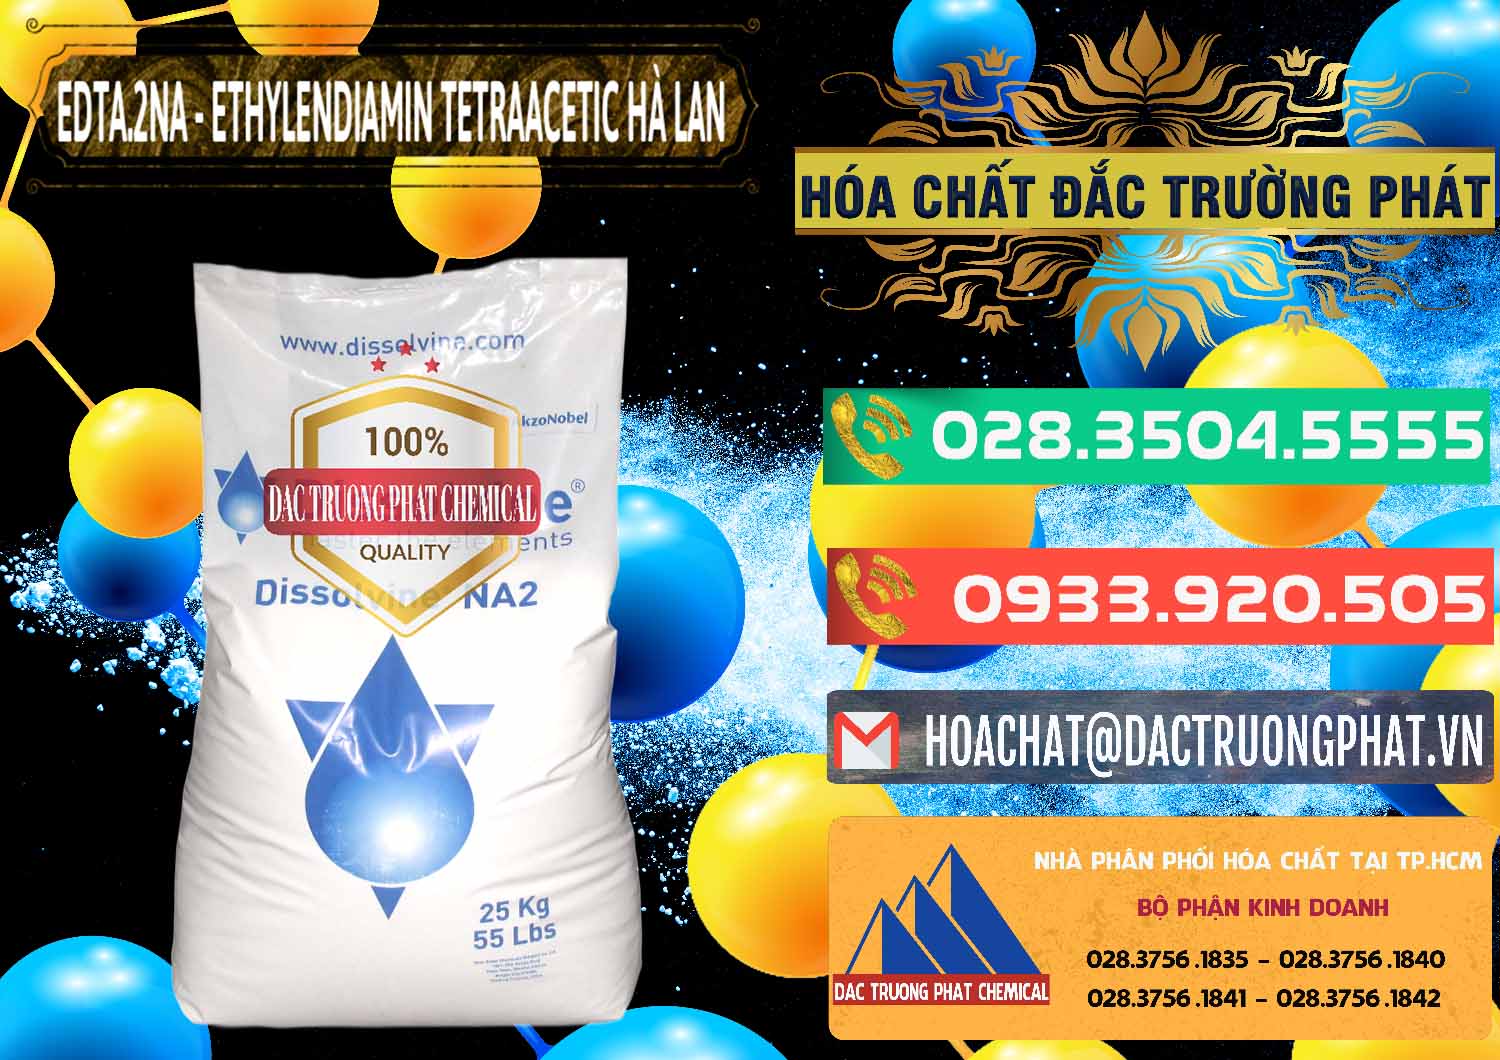 Công ty chuyên cung ứng ( bán ) EDTA.2NA - Ethylendiamin Tetraacetic Dissolvine Hà Lan Netherlands - 0064 - Nơi chuyên cung cấp _ kinh doanh hóa chất tại TP.HCM - congtyhoachat.com.vn